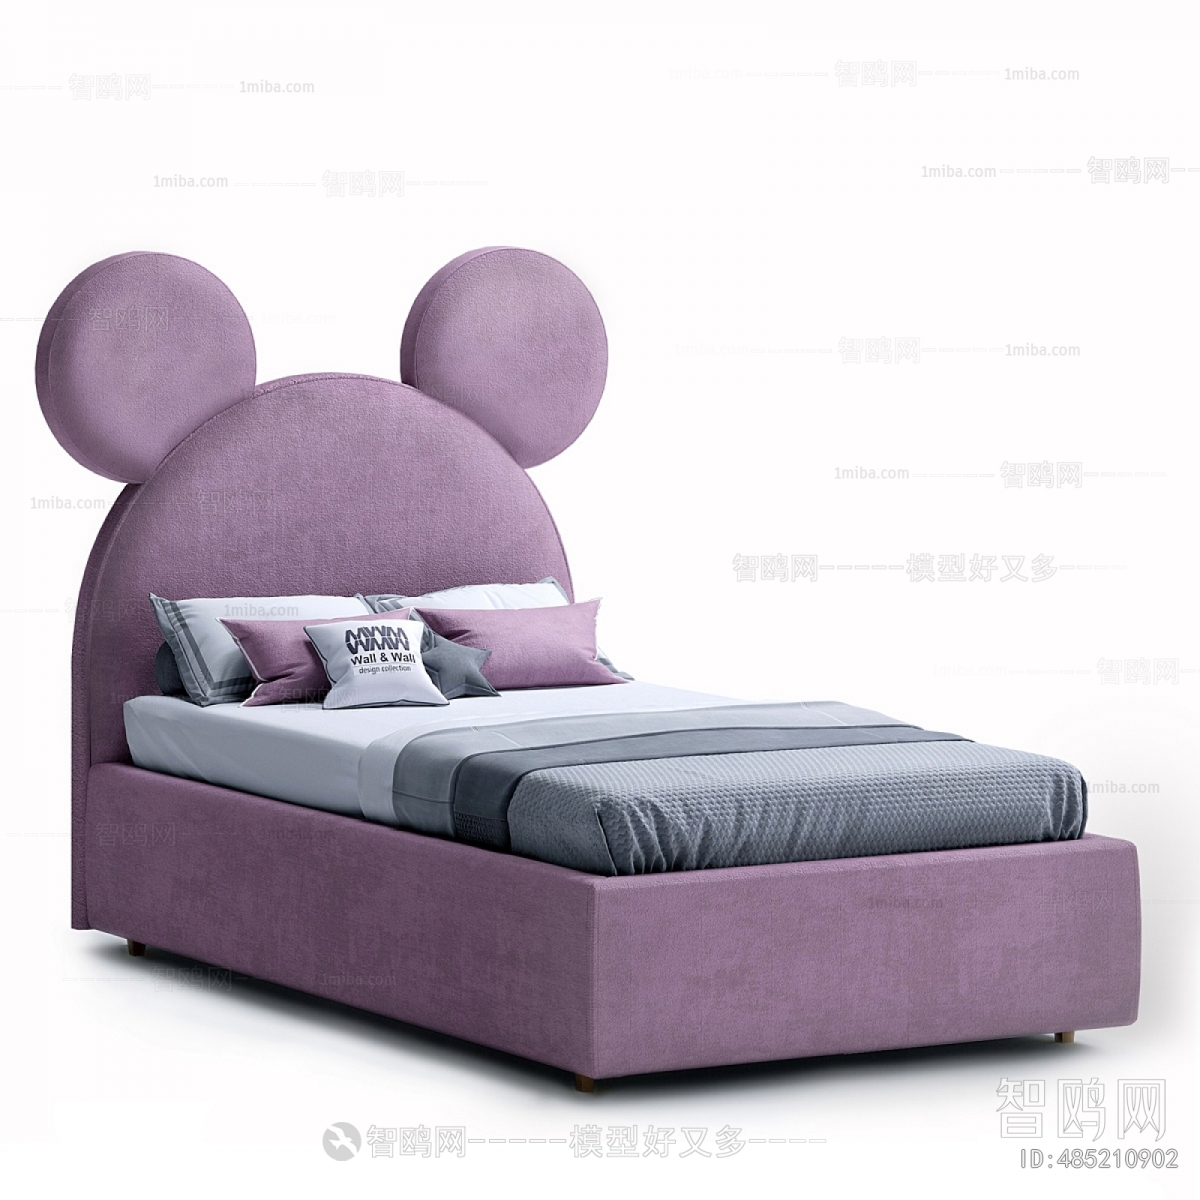 Modern Child's Bed